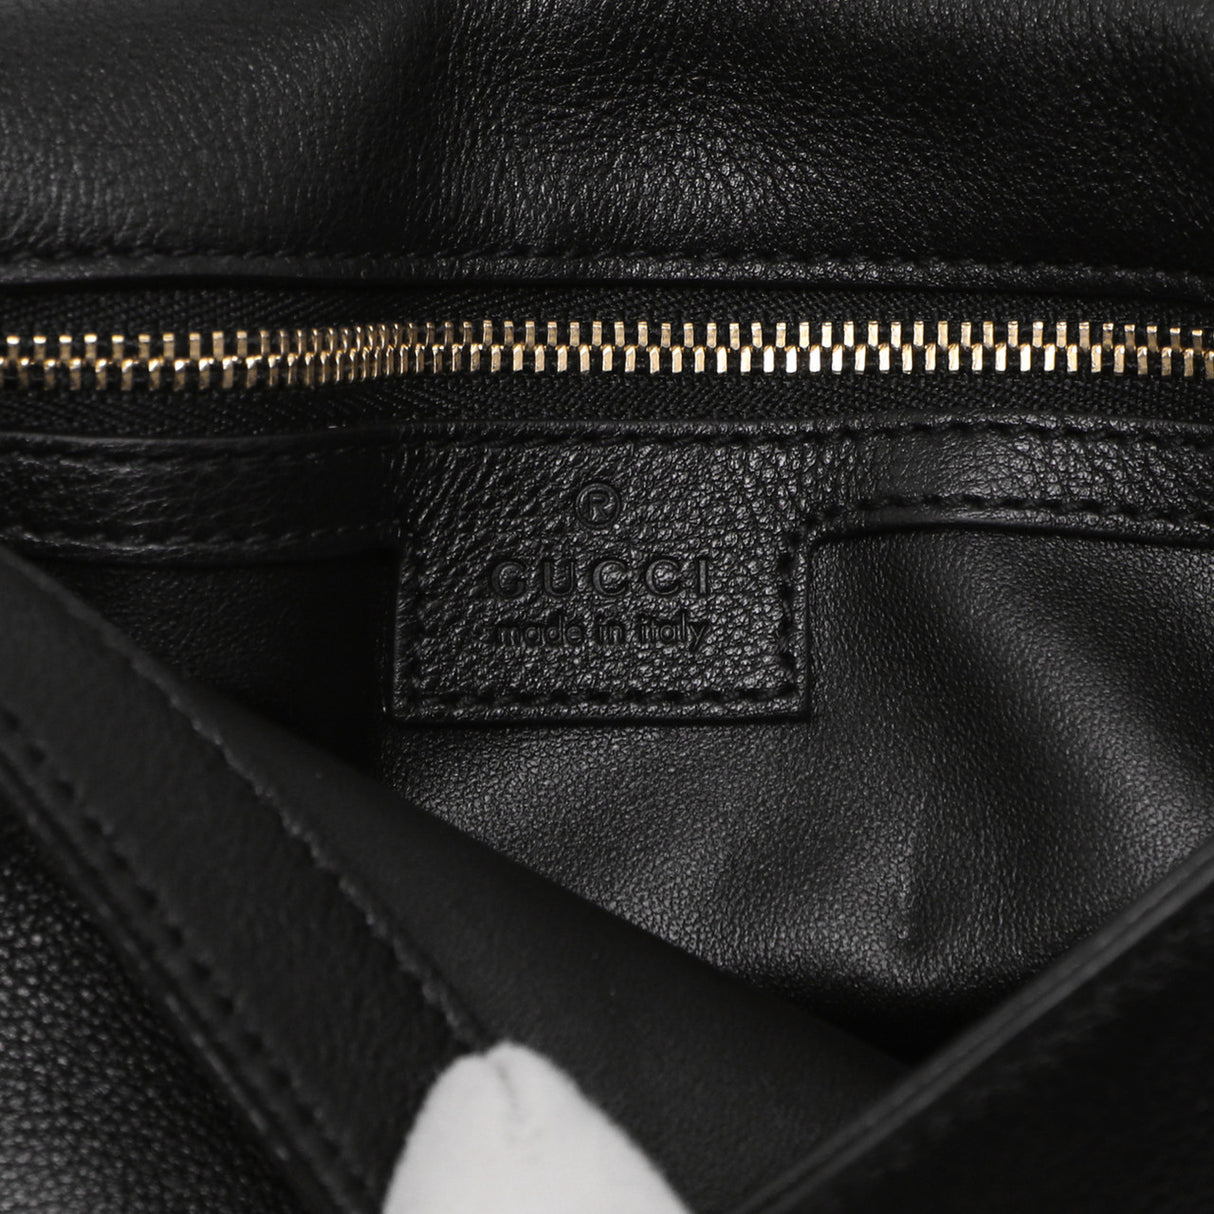 Gucci Black Roxy Calfskin Blondie Chain Shoulder Bag